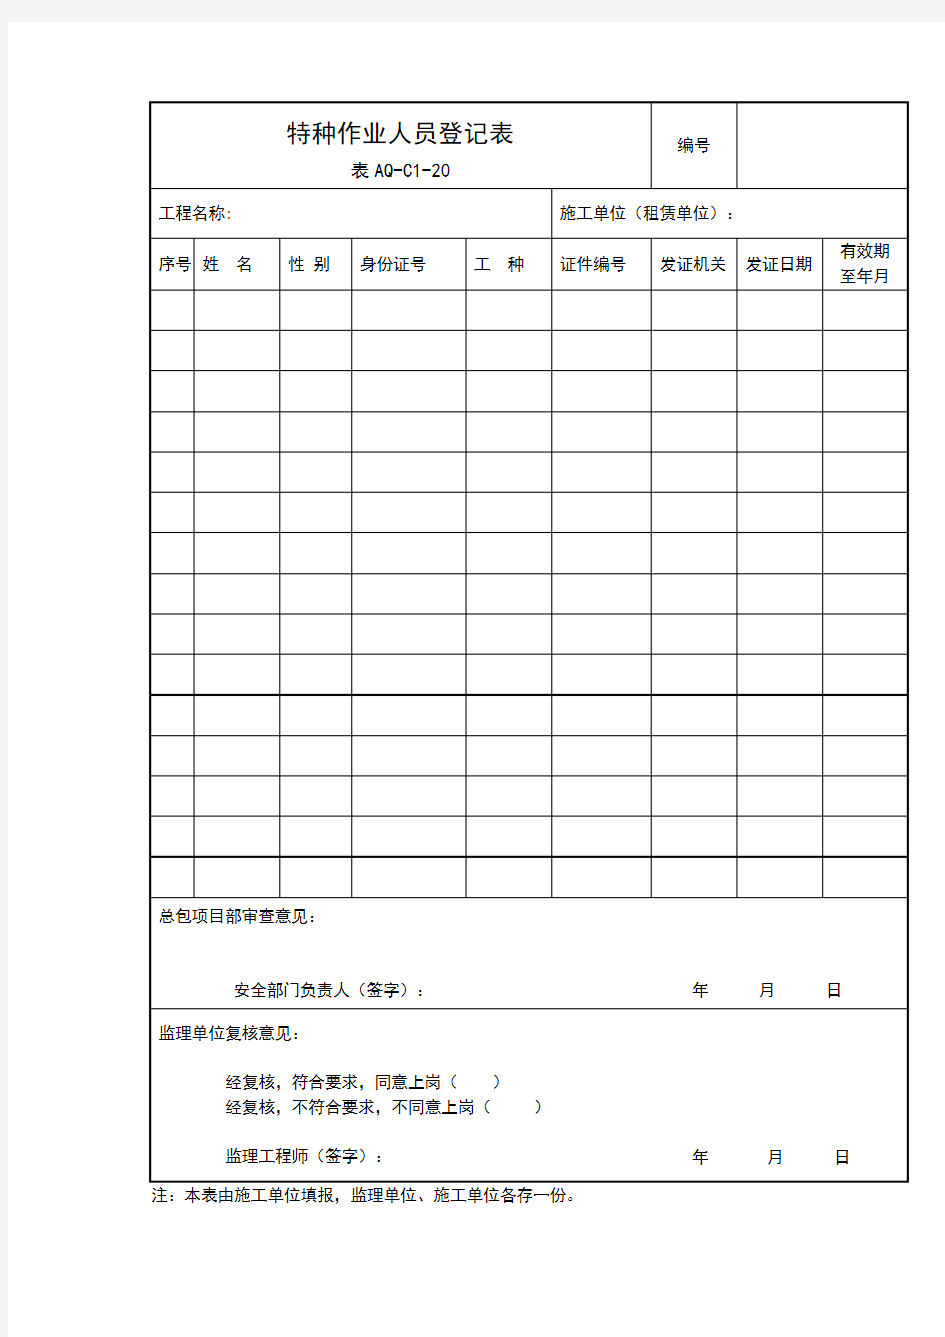 特种作业人员登记表(表AQ-C1-20)